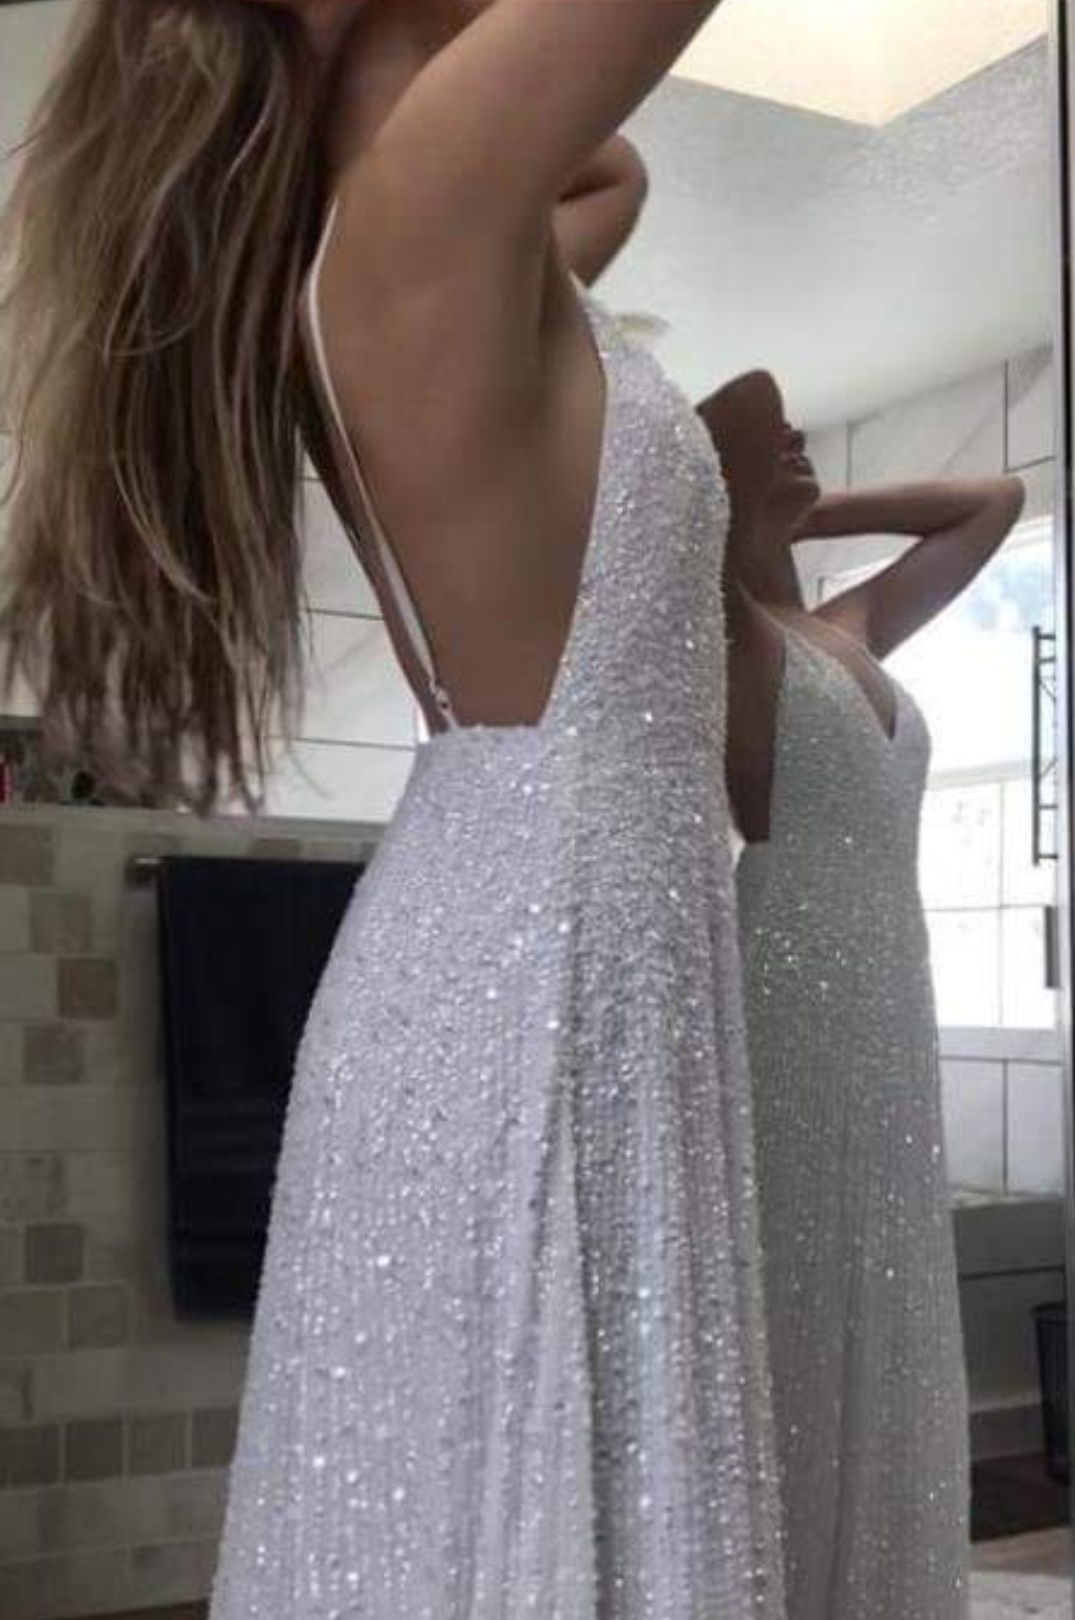 Sukienka ślubna biała Asos cekiny cekinowa maxi Zdobiona M